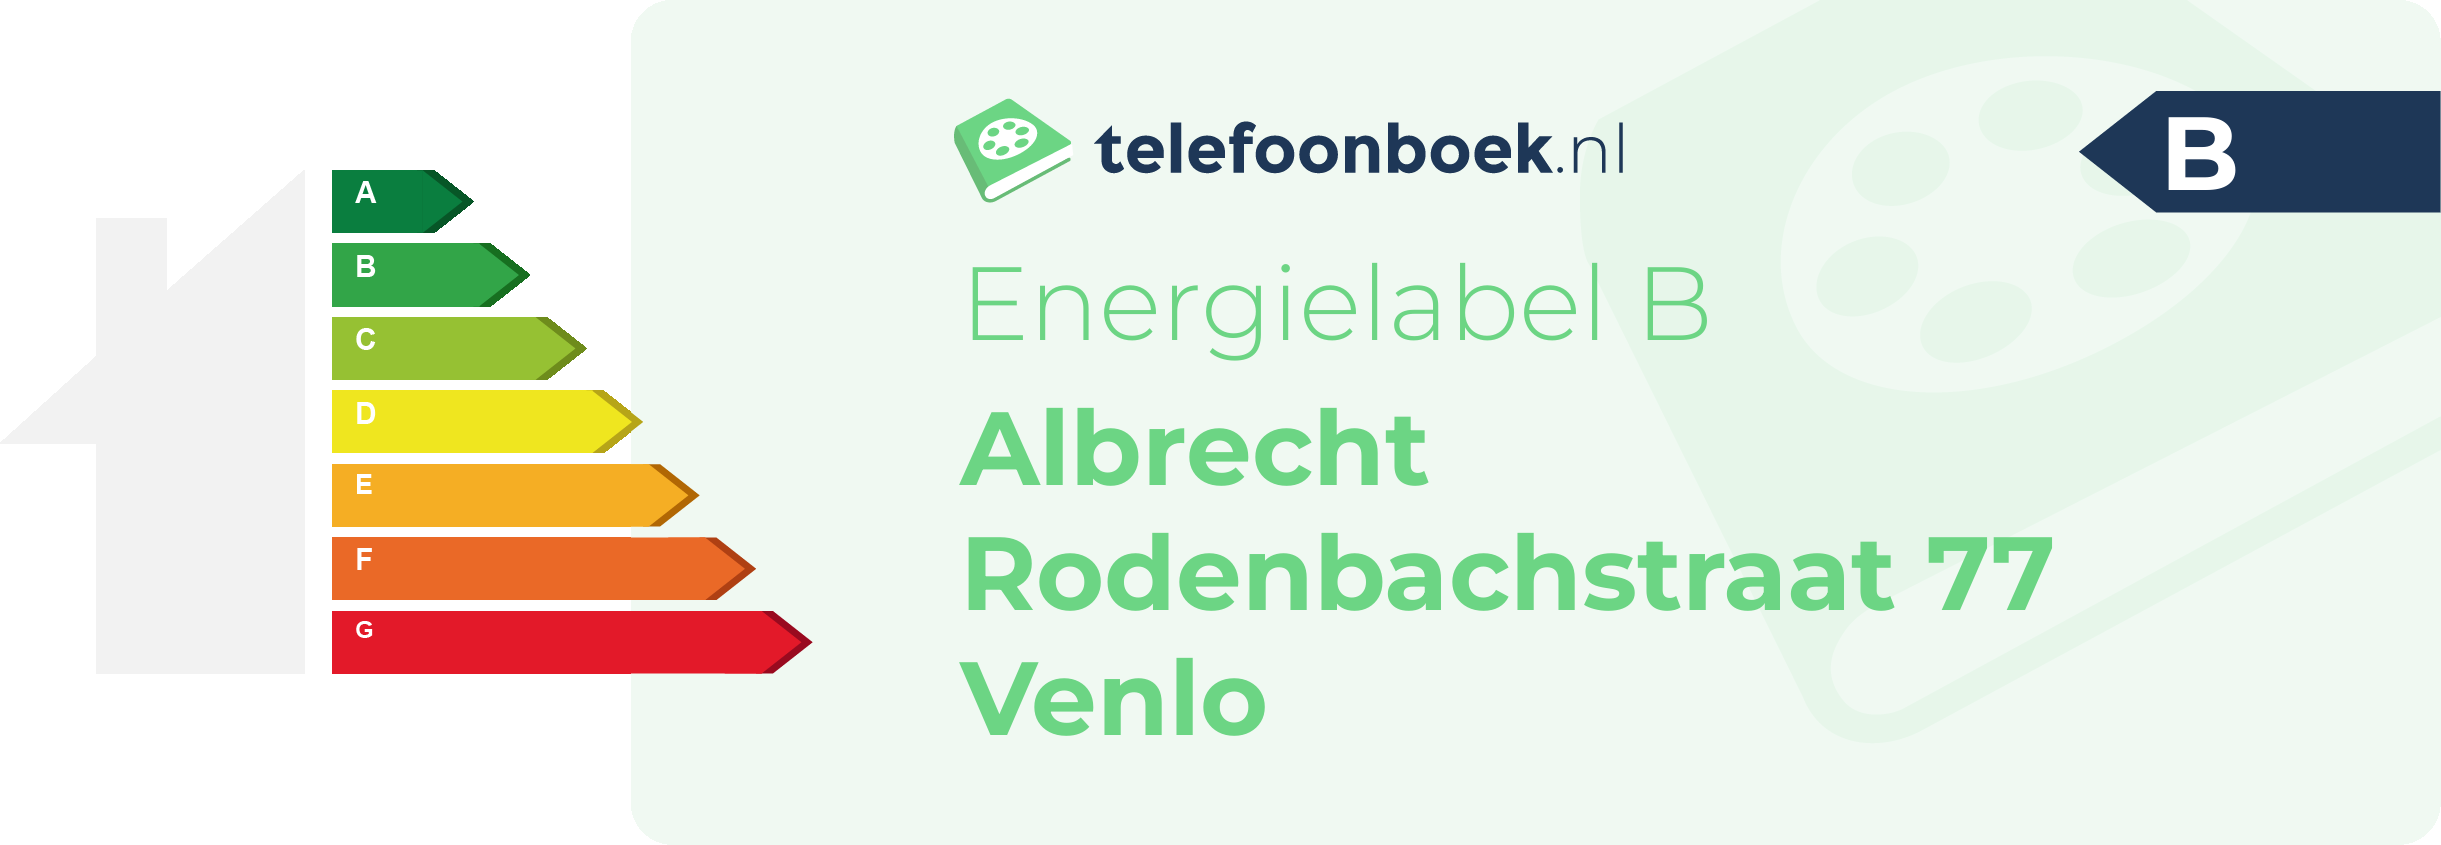 Energielabel Albrecht Rodenbachstraat 77 Venlo